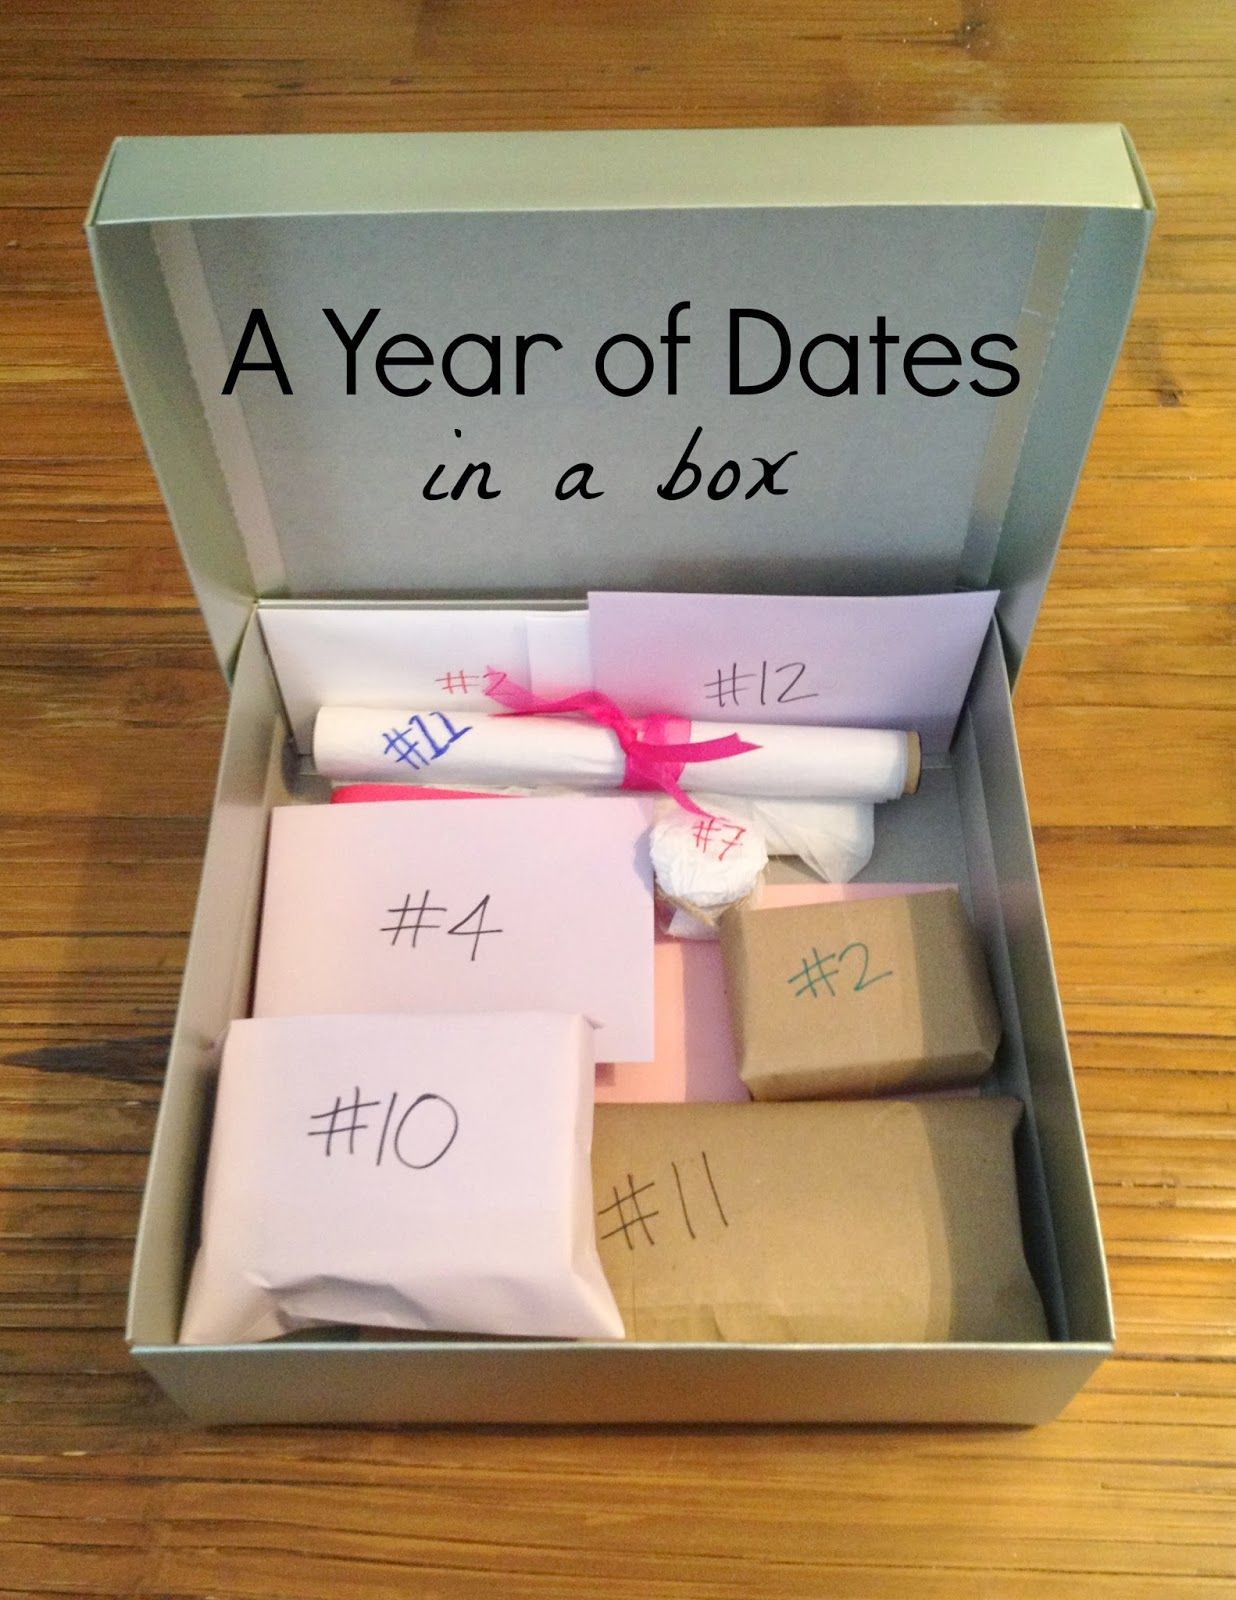 Originelle Geschenke Für Senioren
 12 Monate 12 Dates kreatives Geschenk zum Valentinstag